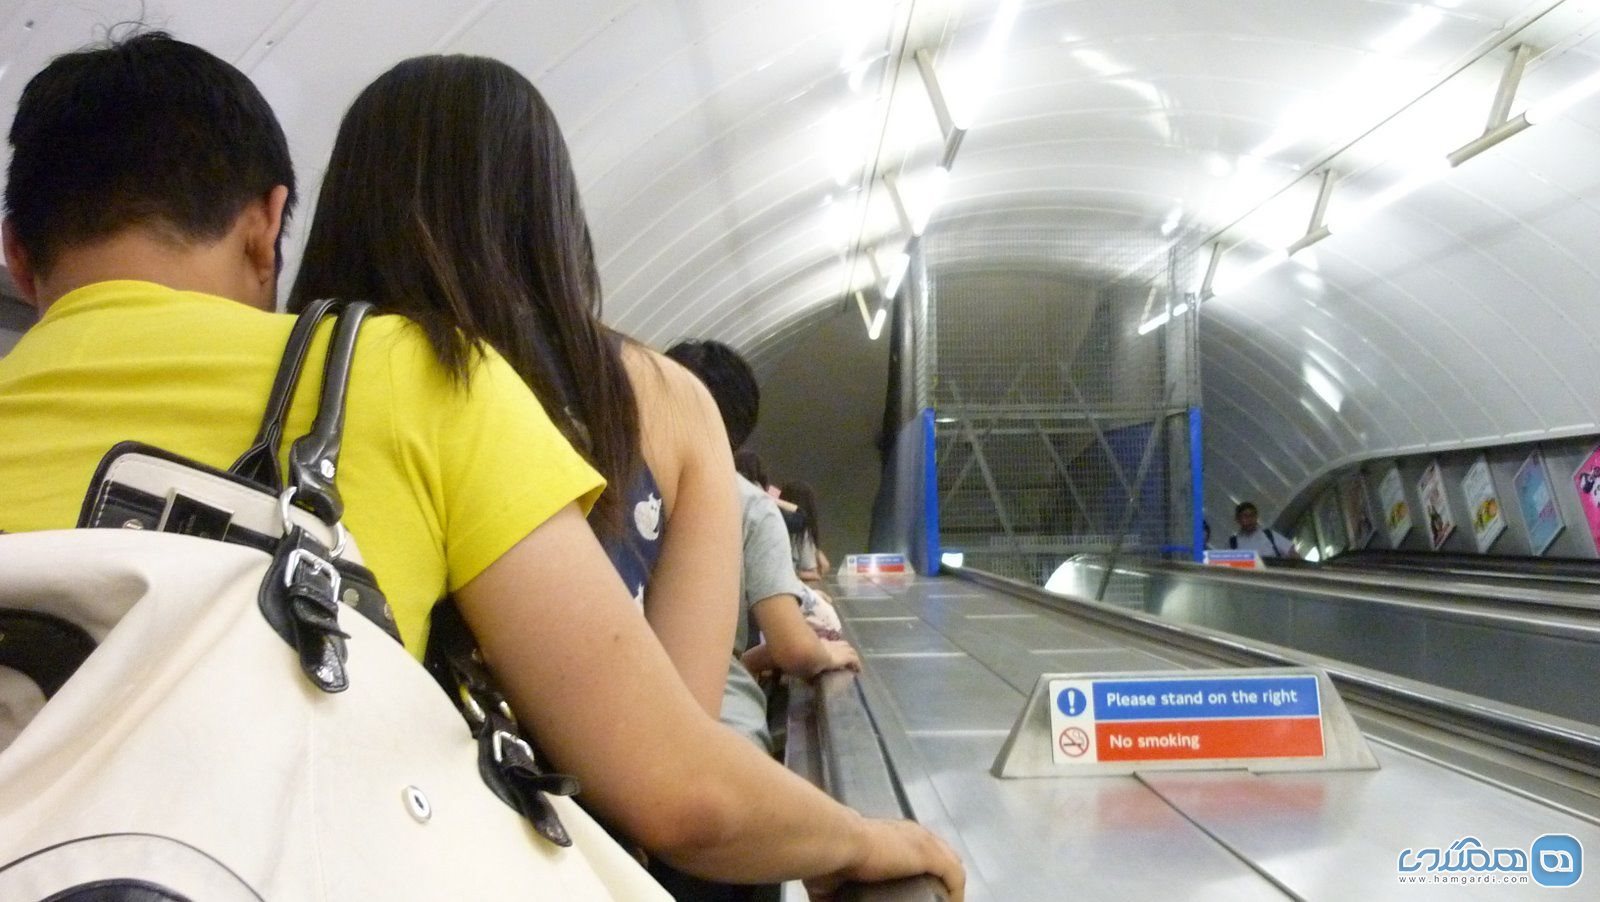 در ایستگاه های مترو می بایست سمت راست بایستید